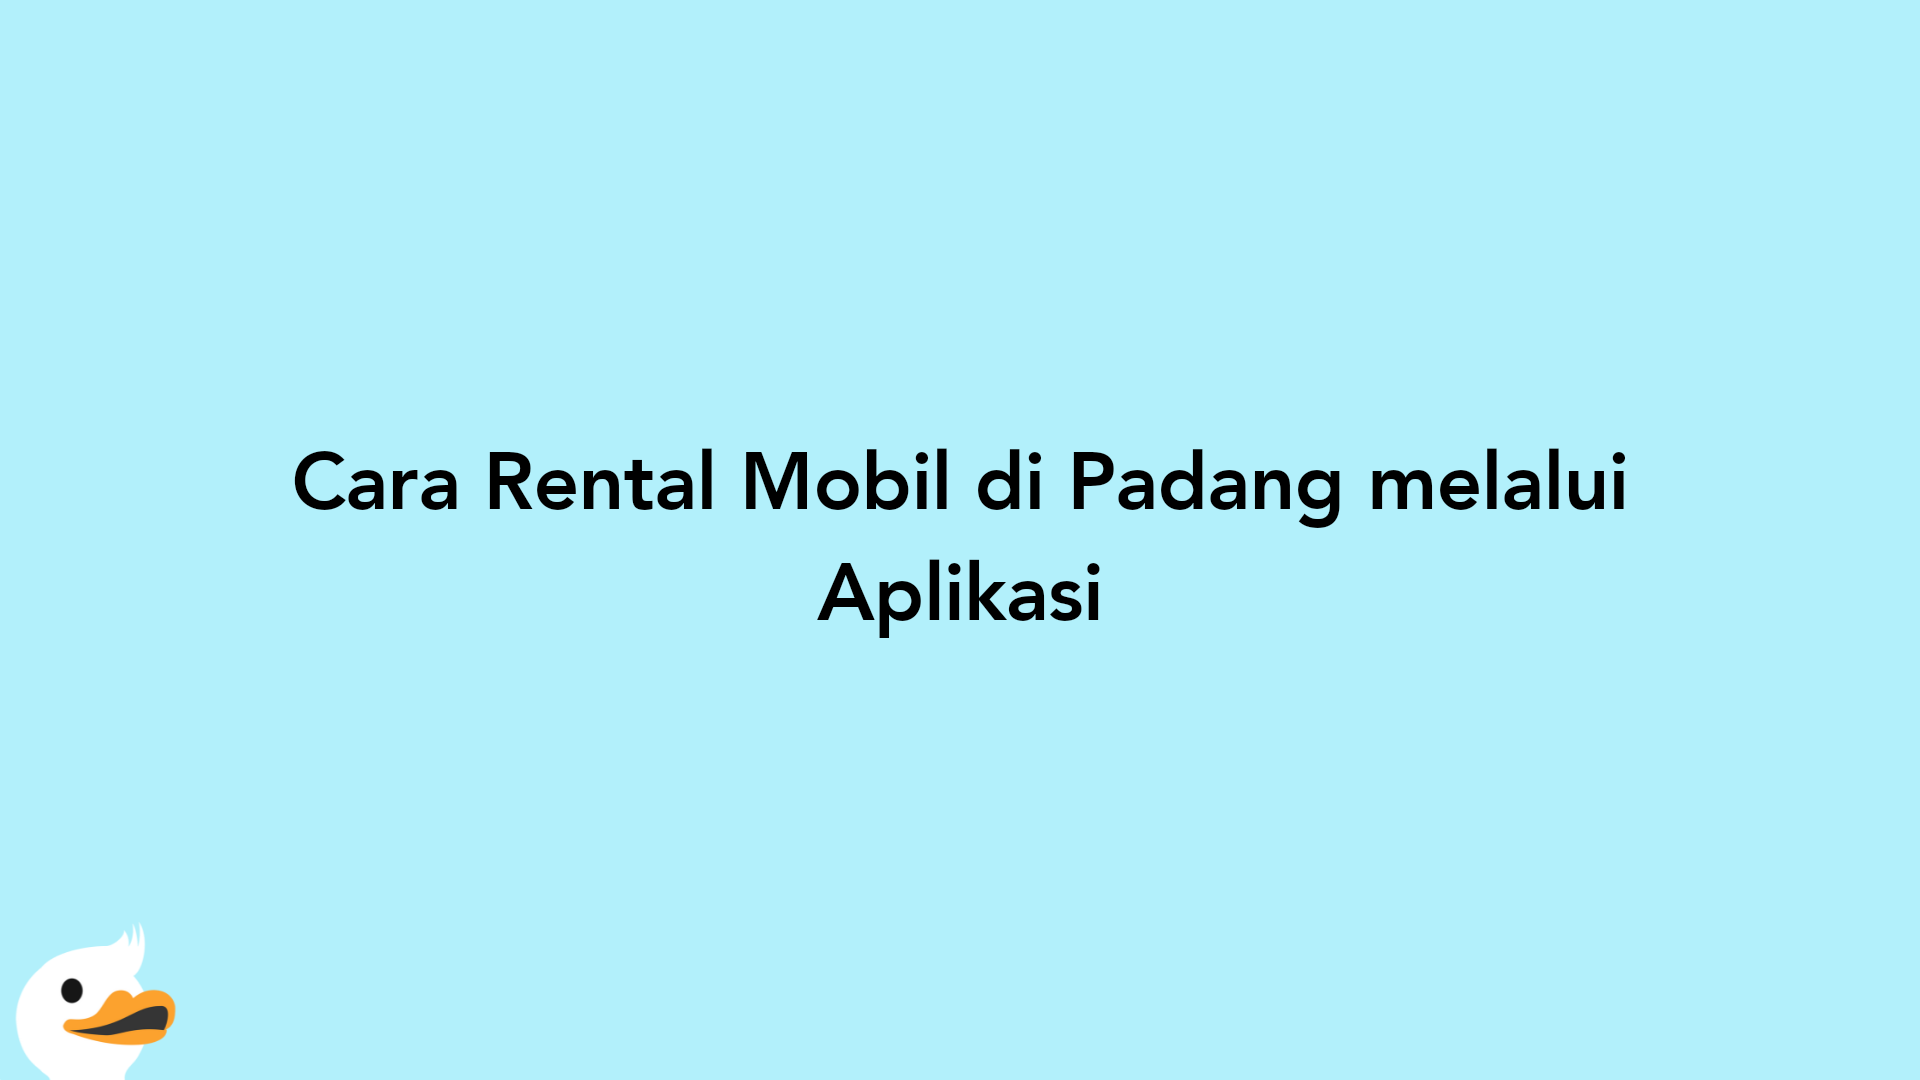 Cara Rental Mobil di Padang melalui Aplikasi